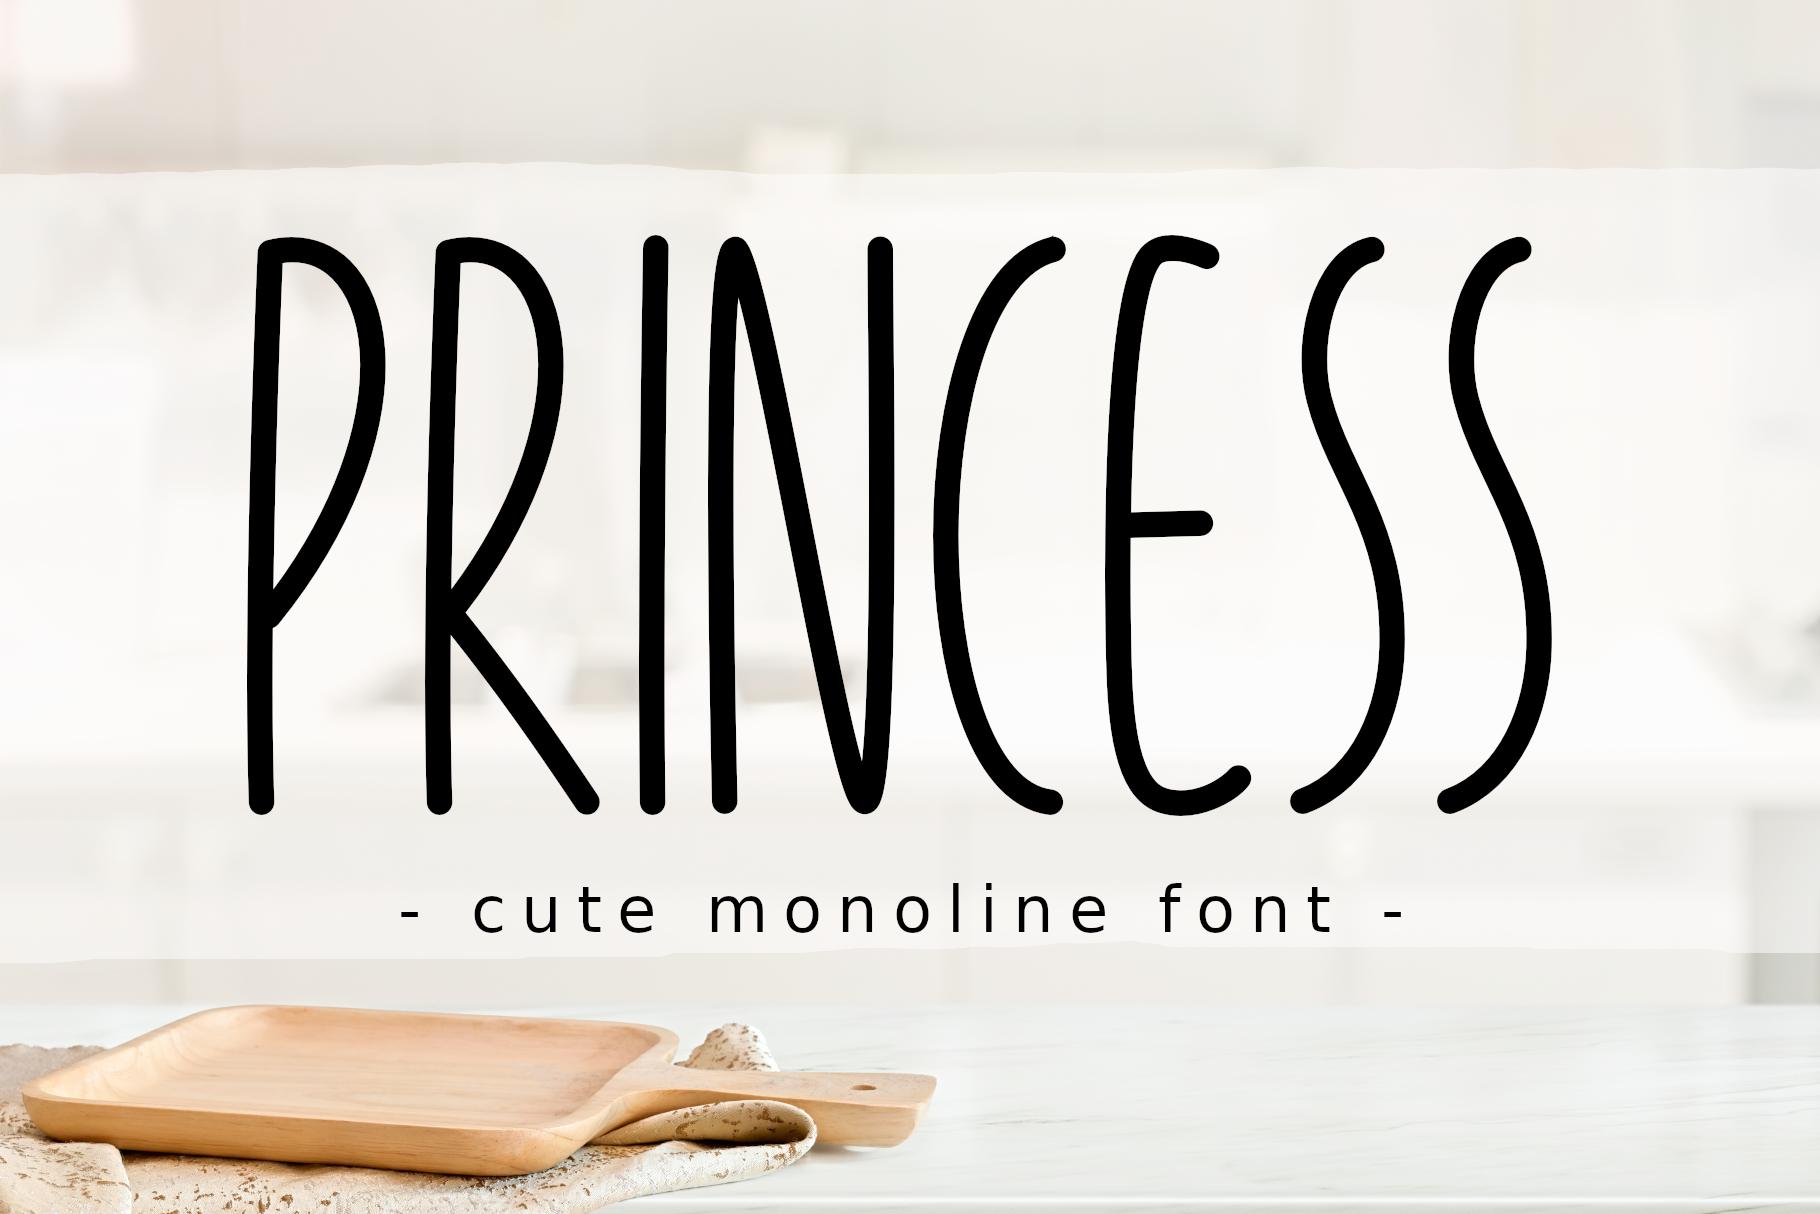 Princess Font